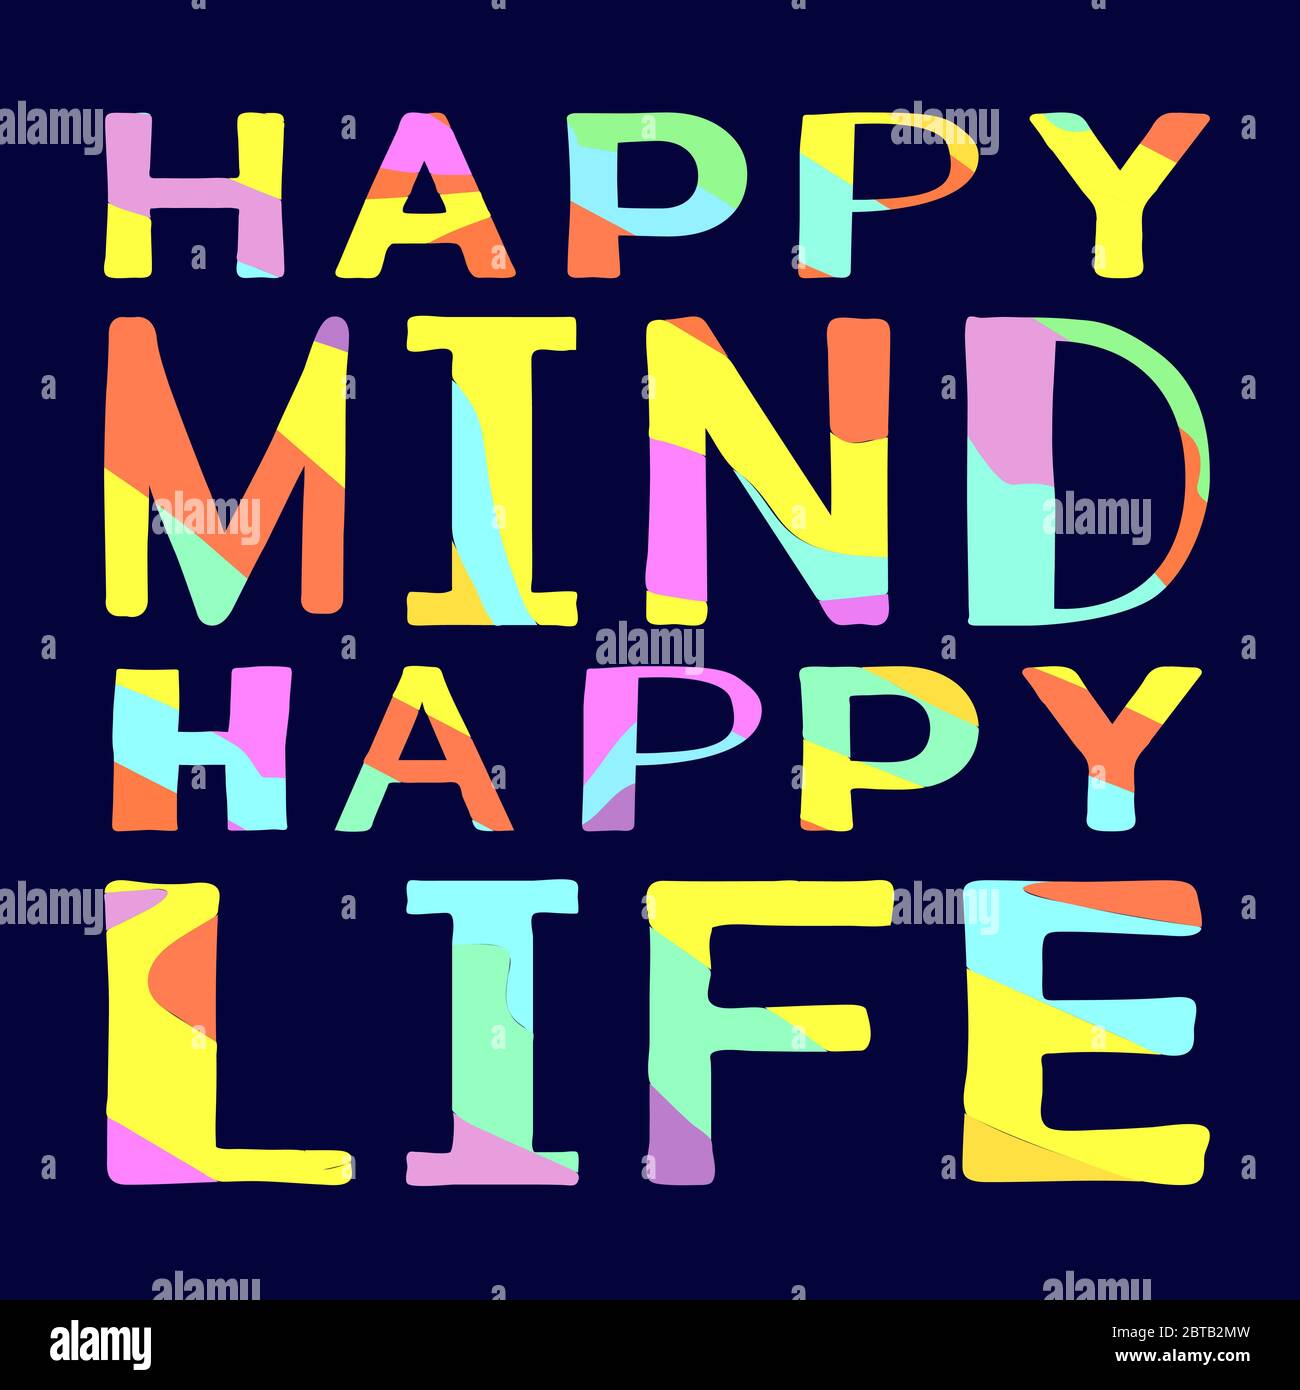 Happy Mind Happy Life Drole De Dessin Anime Citation Motivationnelle Sur Fond Bleu Lettres Aux Couleurs Vives Contrastees Illustration Vectorielle Pour Bannieres Image Vectorielle Stock Alamy